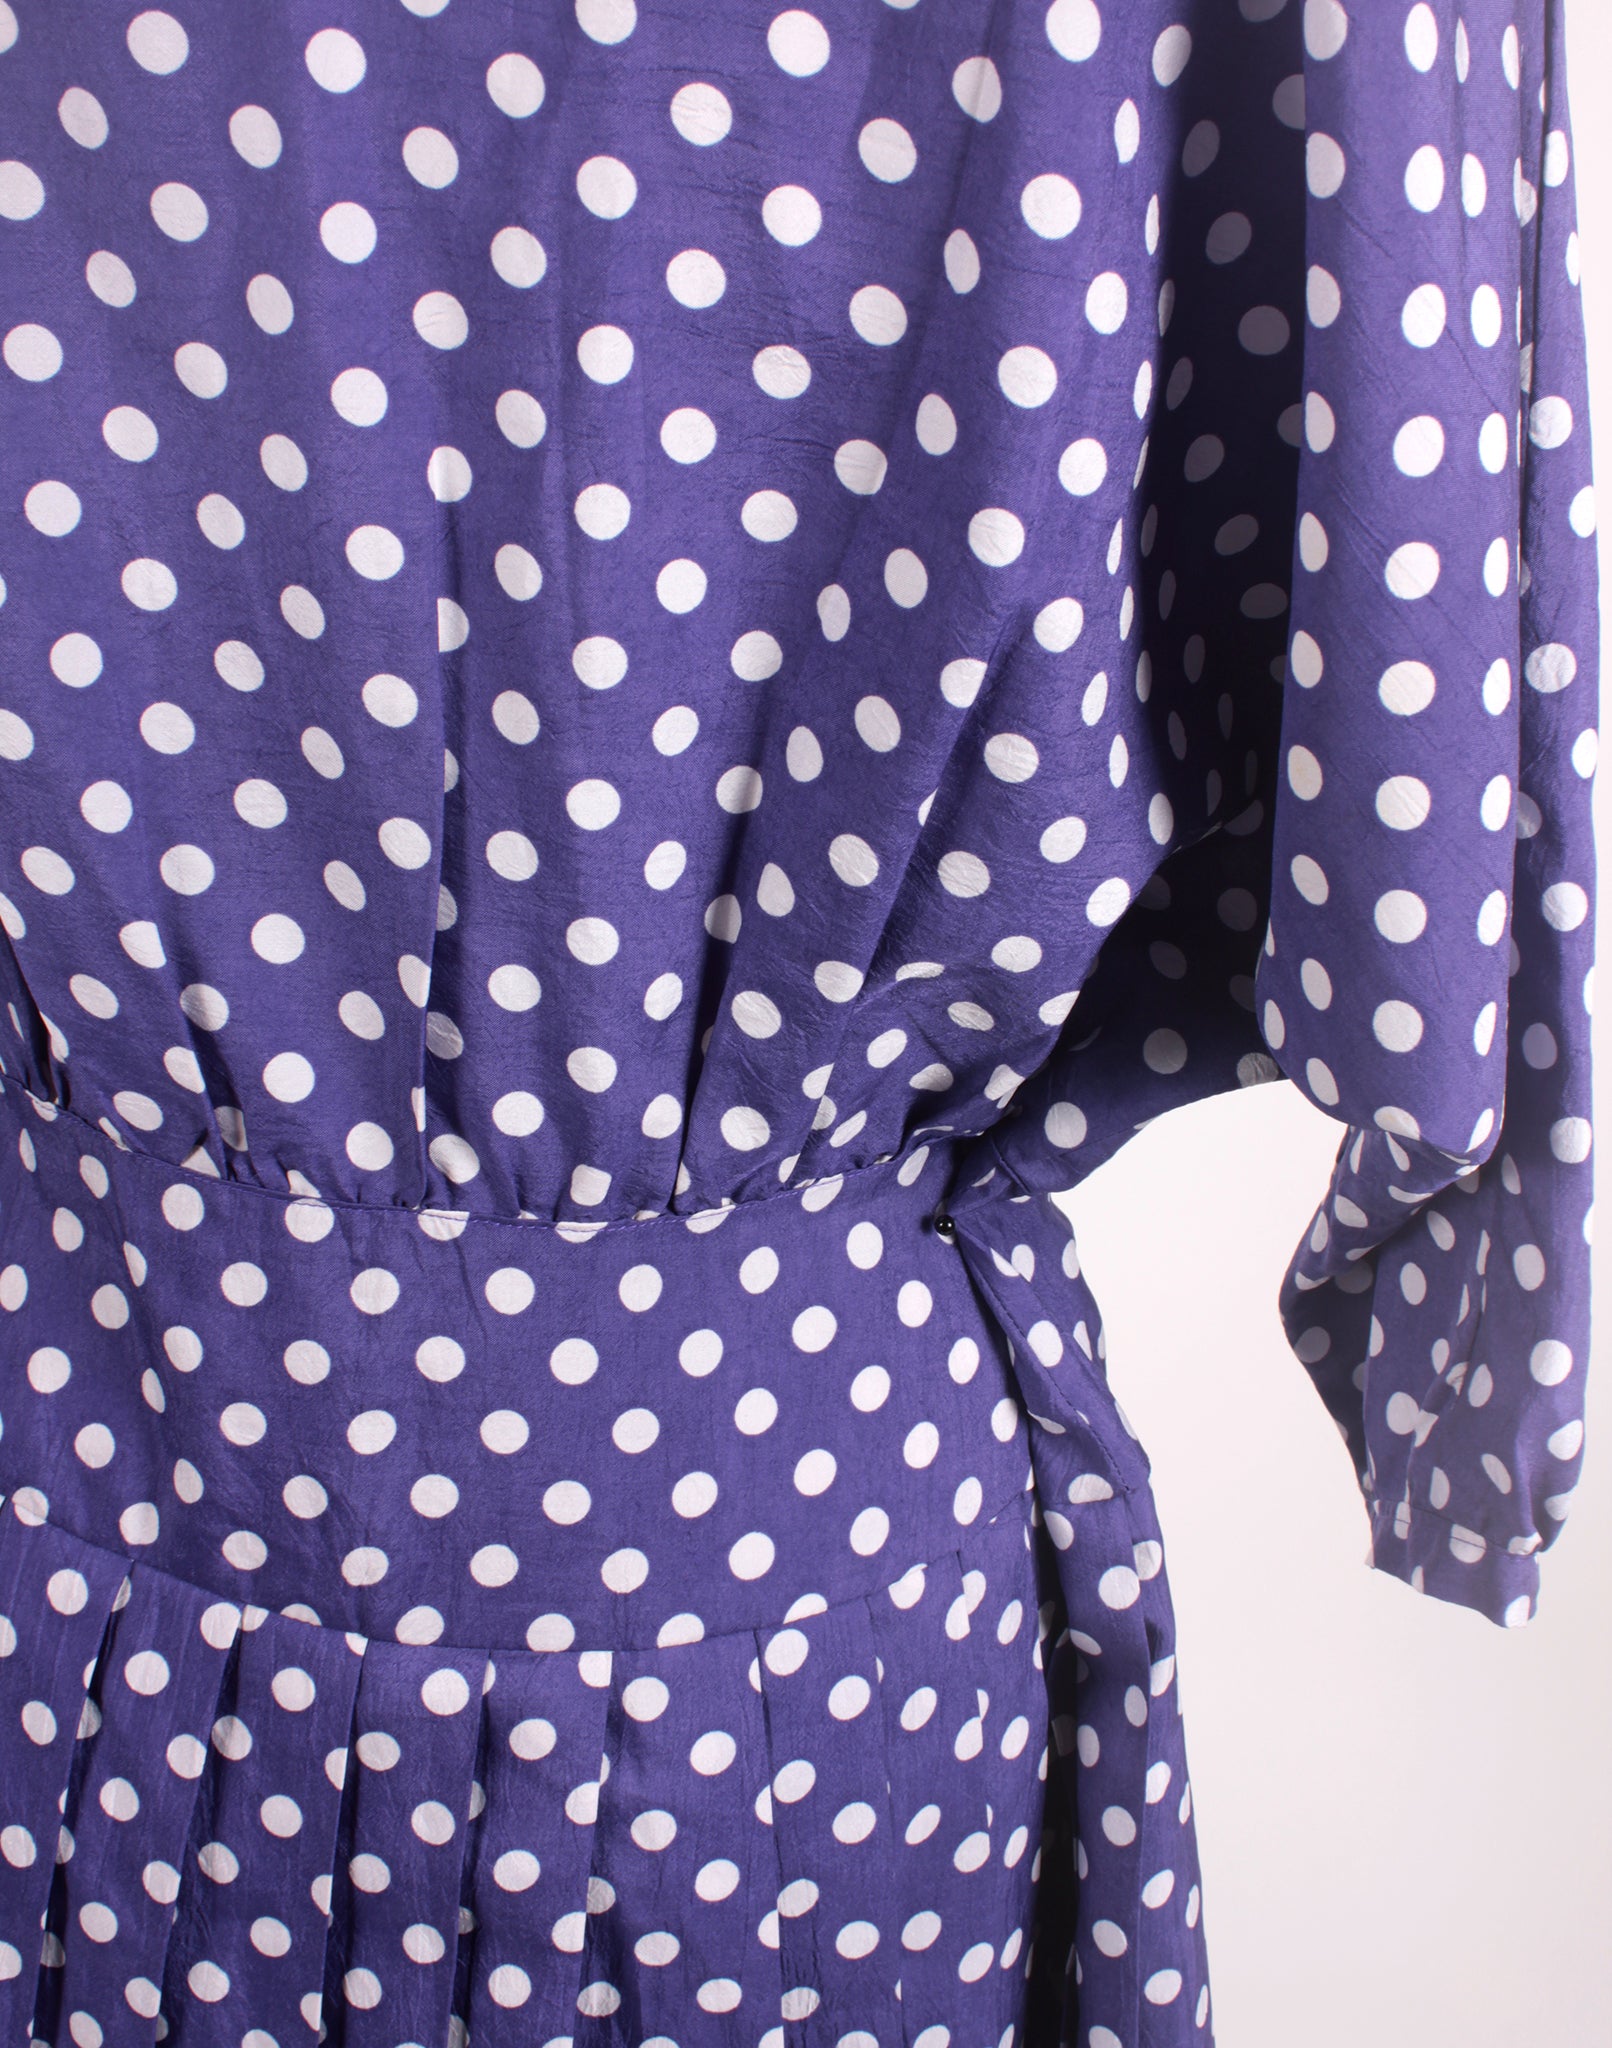 Vintage 80's Purple Polka Dot Pleated Skirt Dress